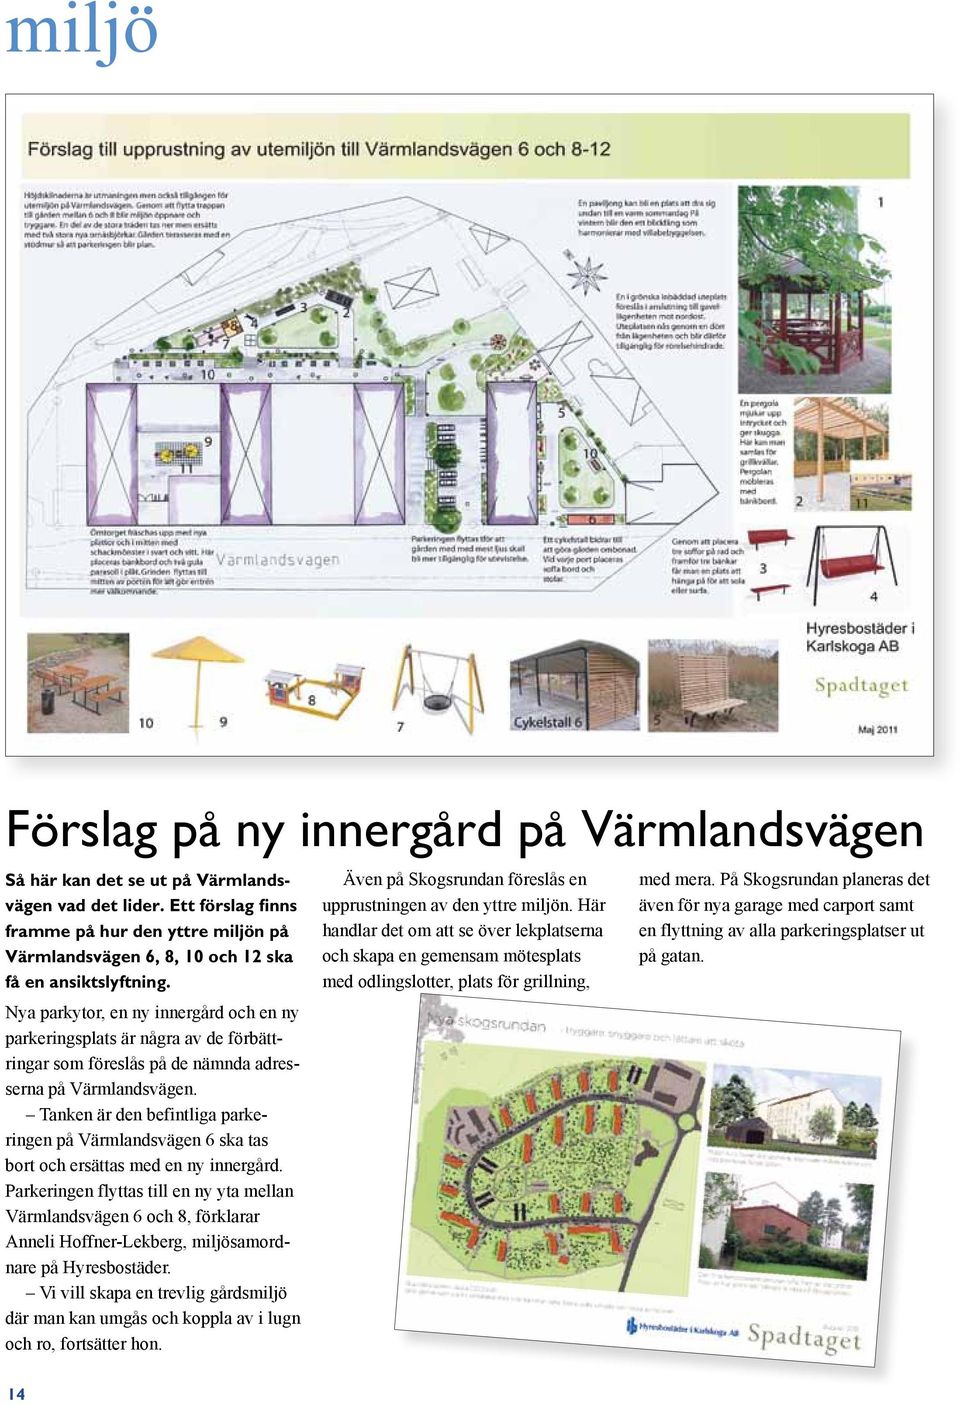 Nya parkytor, en ny innergård och en ny parkeringsplats är några av de förbättringar som föreslås på de nämnda adresserna på Värmlandsvägen.